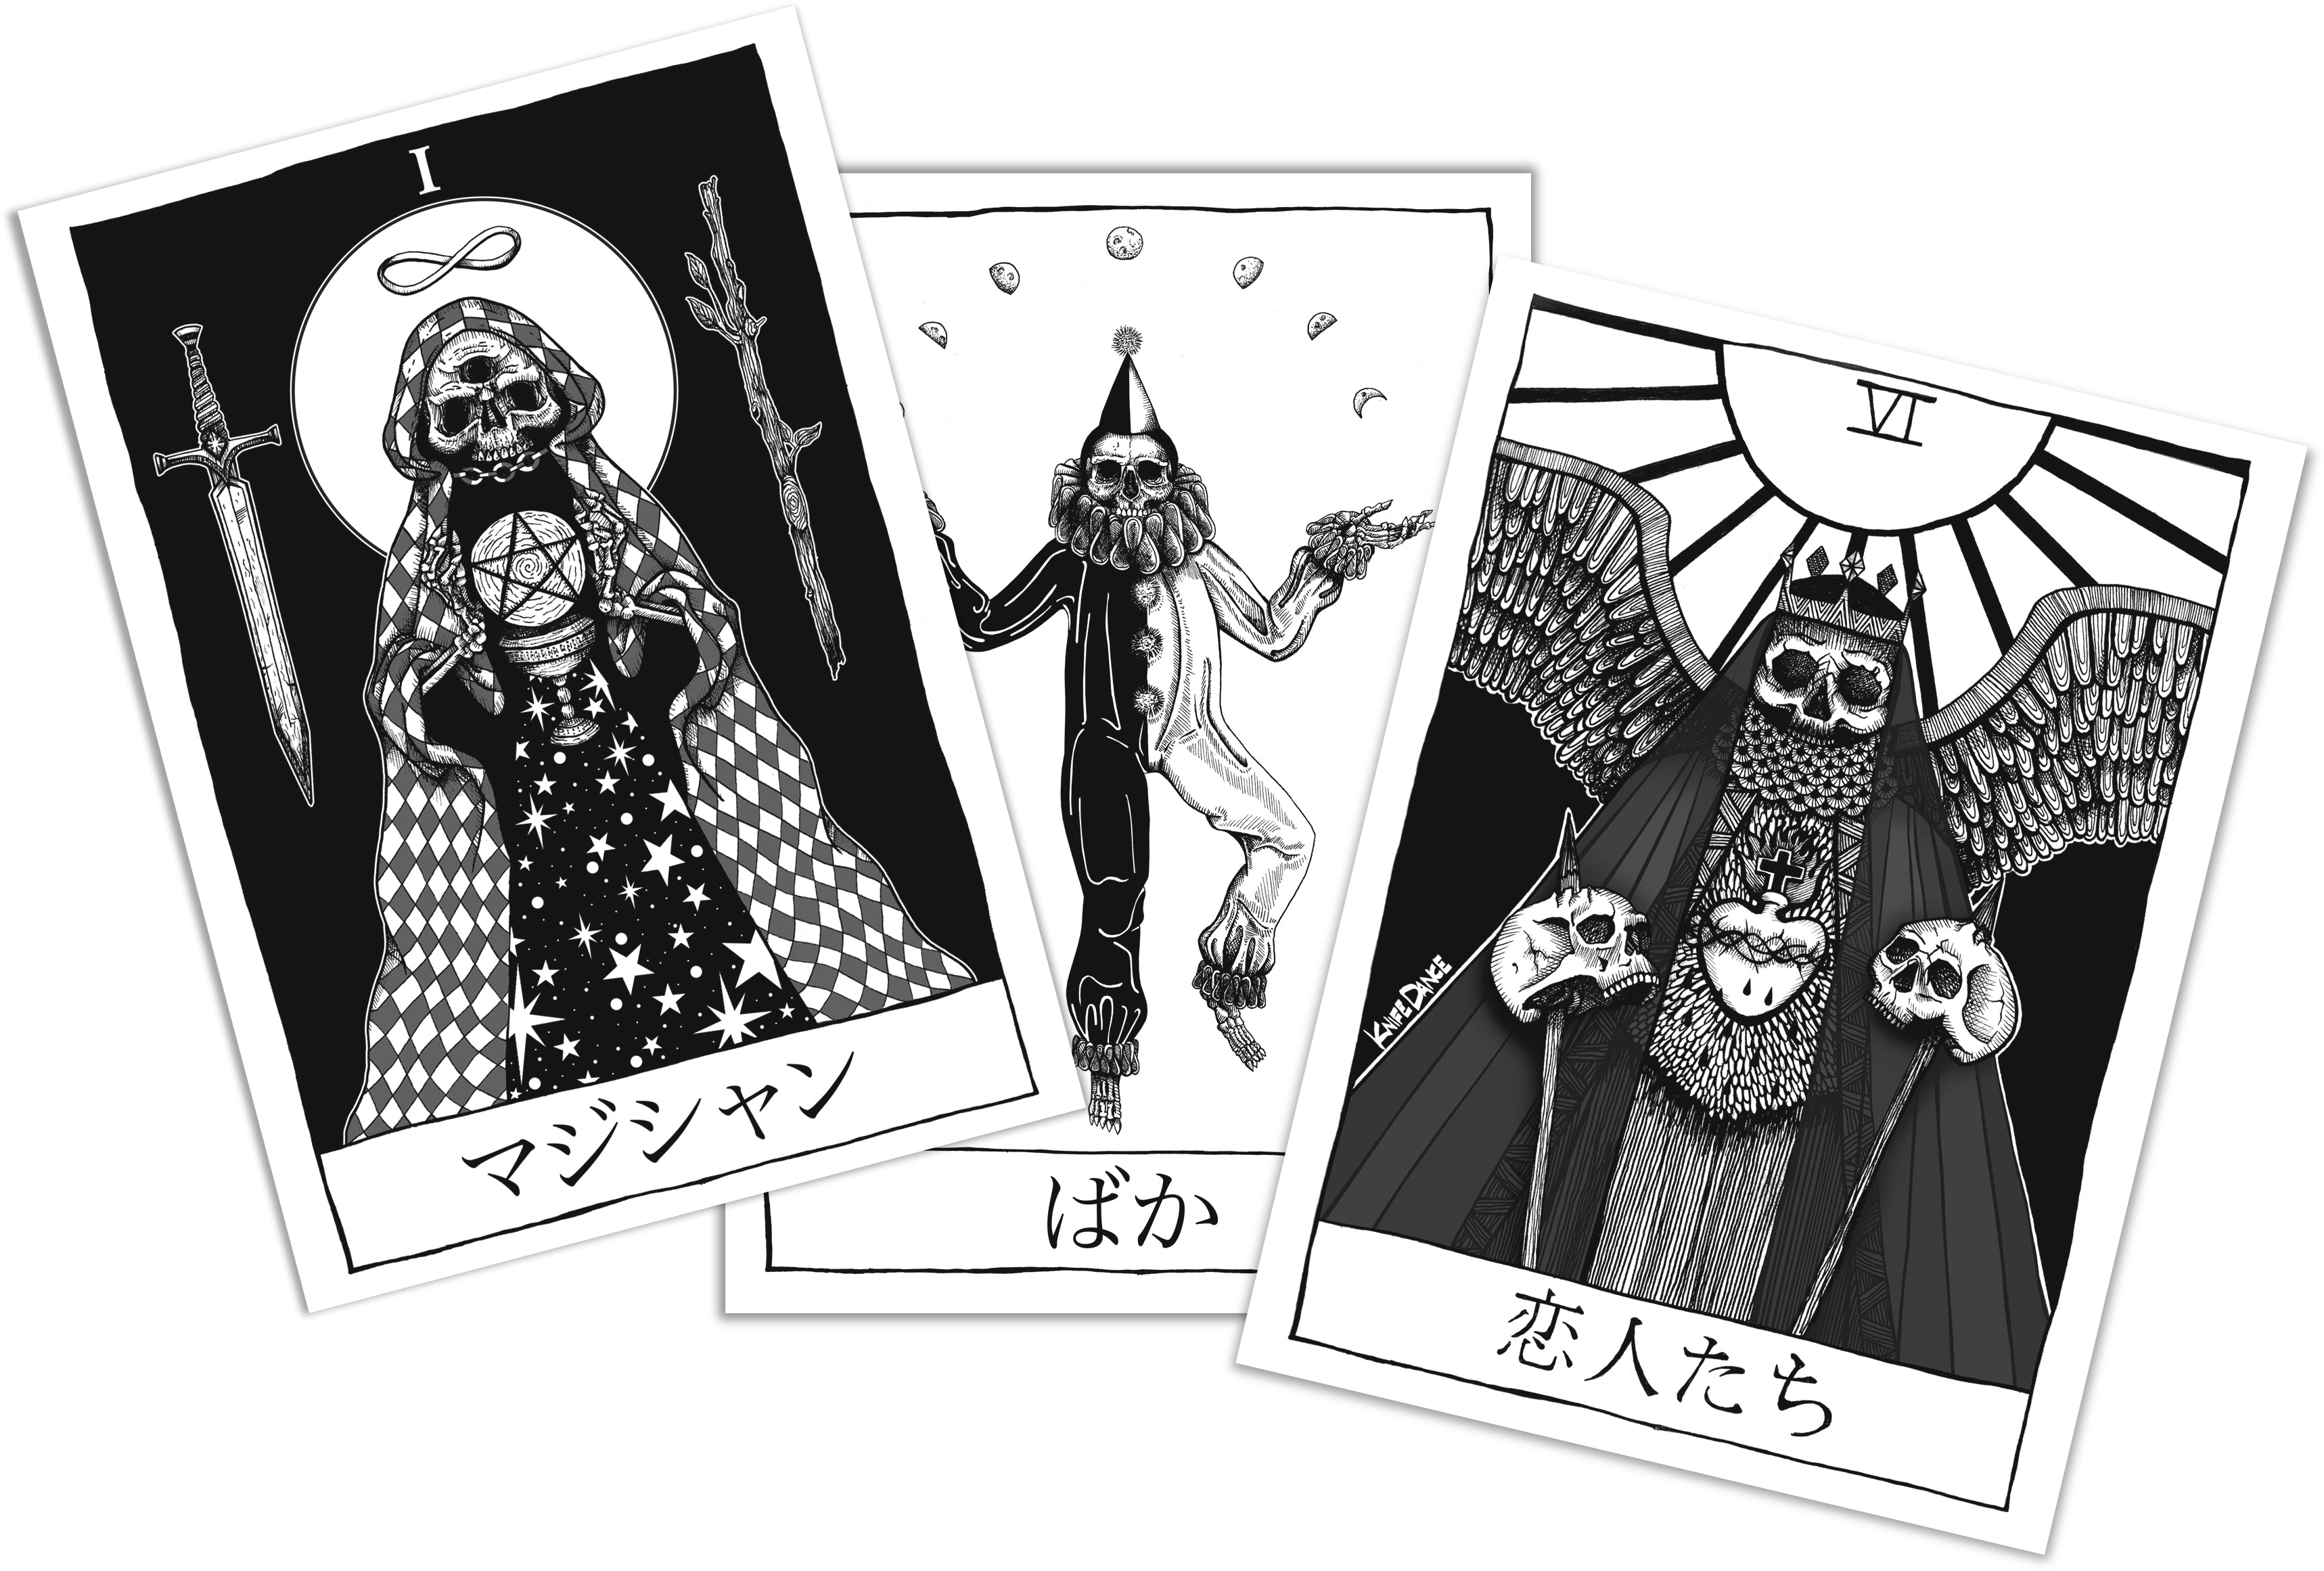 Tarot Card Bundle